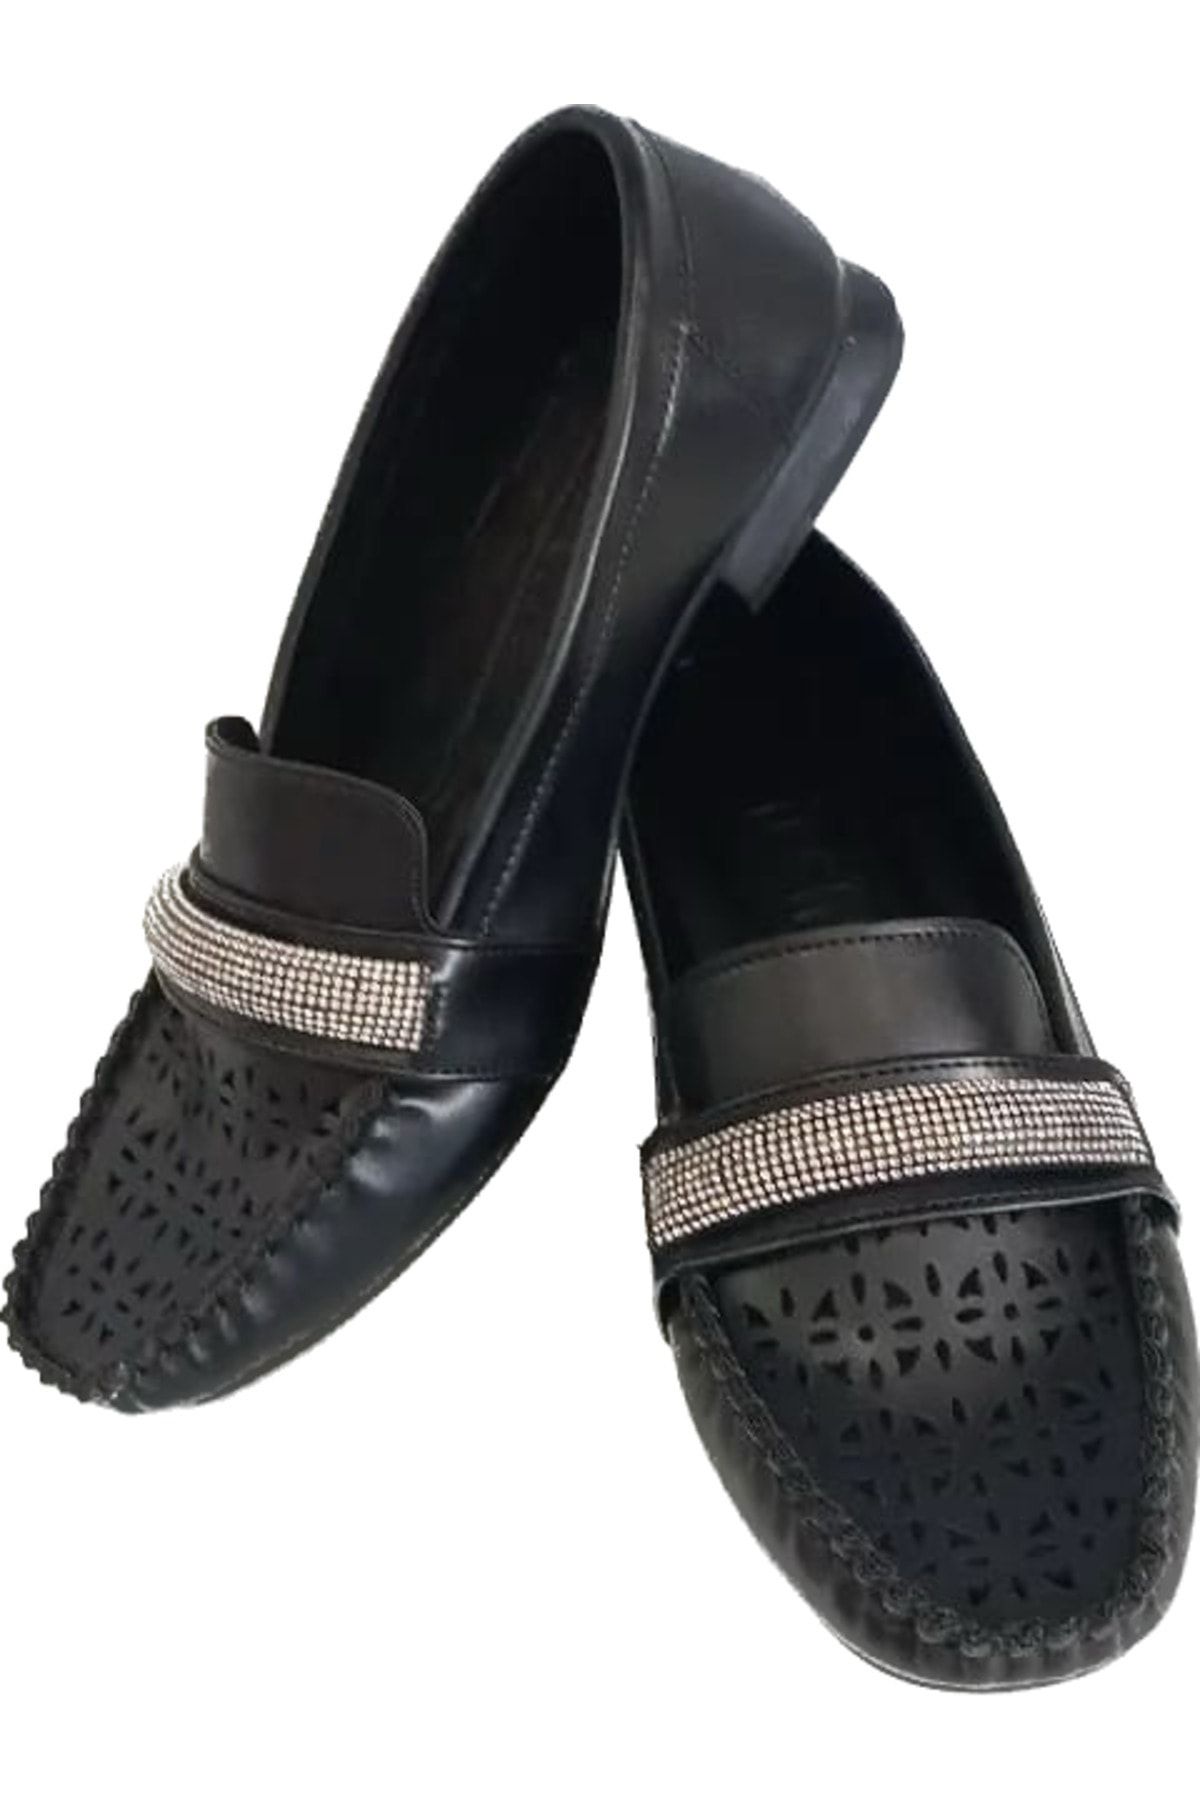 İpek kadın siyah yumuşak rahat taban taşlı anne ayakkabısı babet loafer